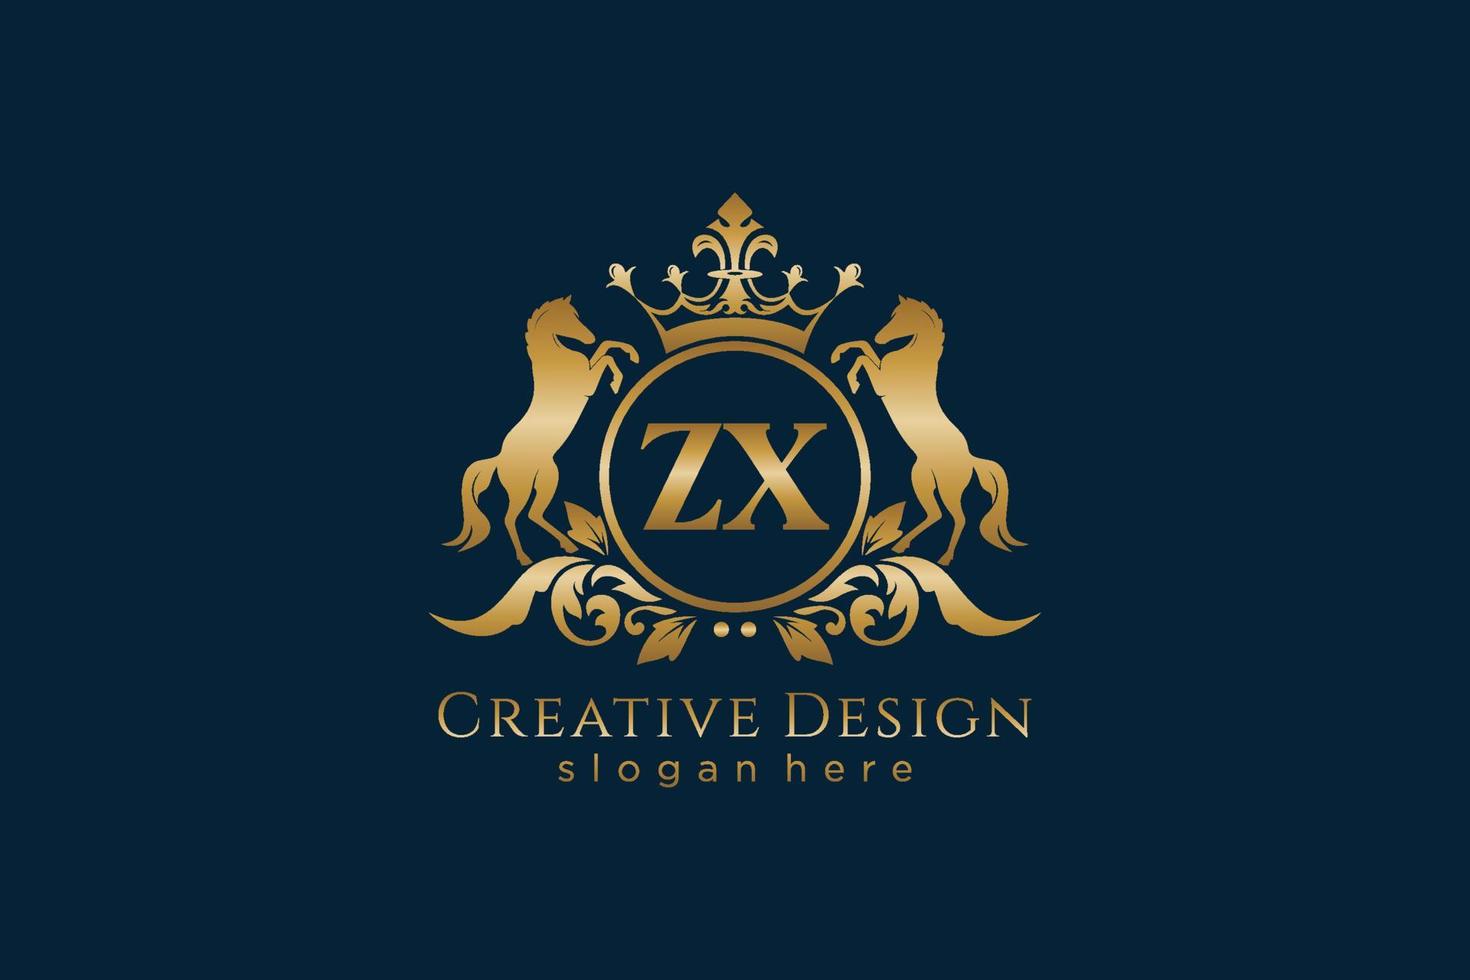 cresta dorada retro inicial zx con círculo y dos caballos, plantilla de insignia con pergaminos y corona real - perfecto para proyectos de marca de lujo vector